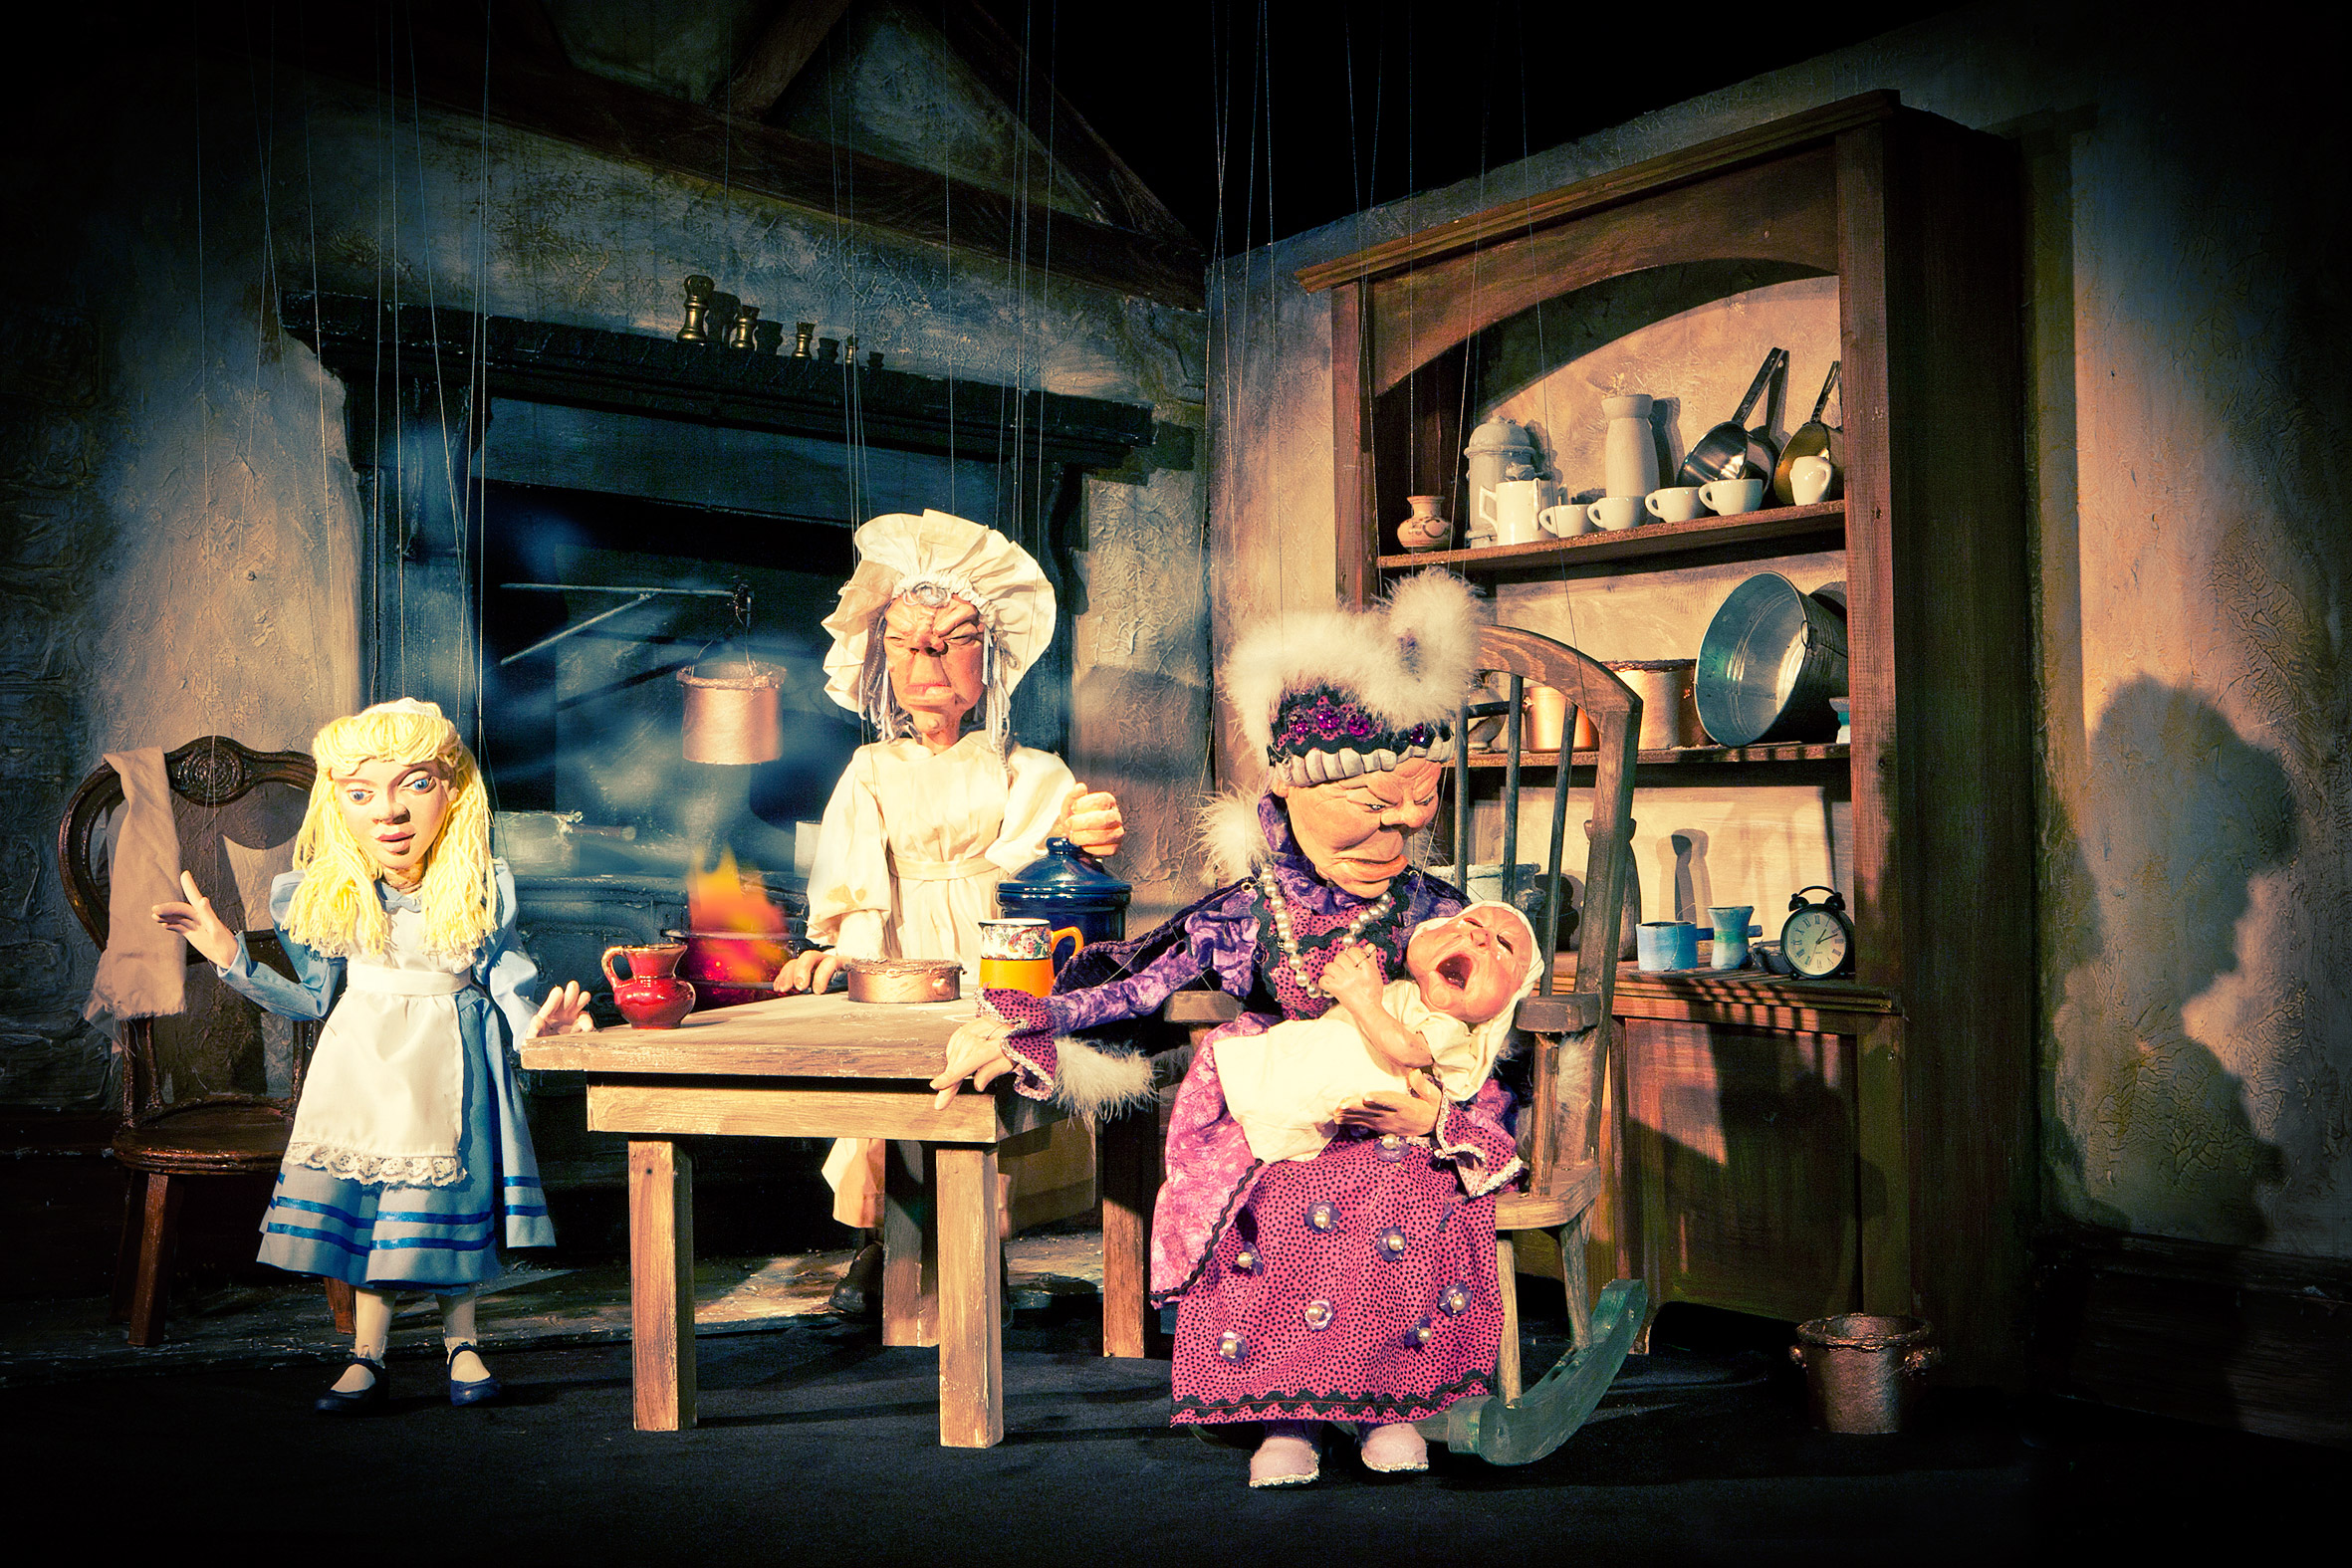 Upfront Puppet Theatre - Theatres in Cumbria - Creative Tourist